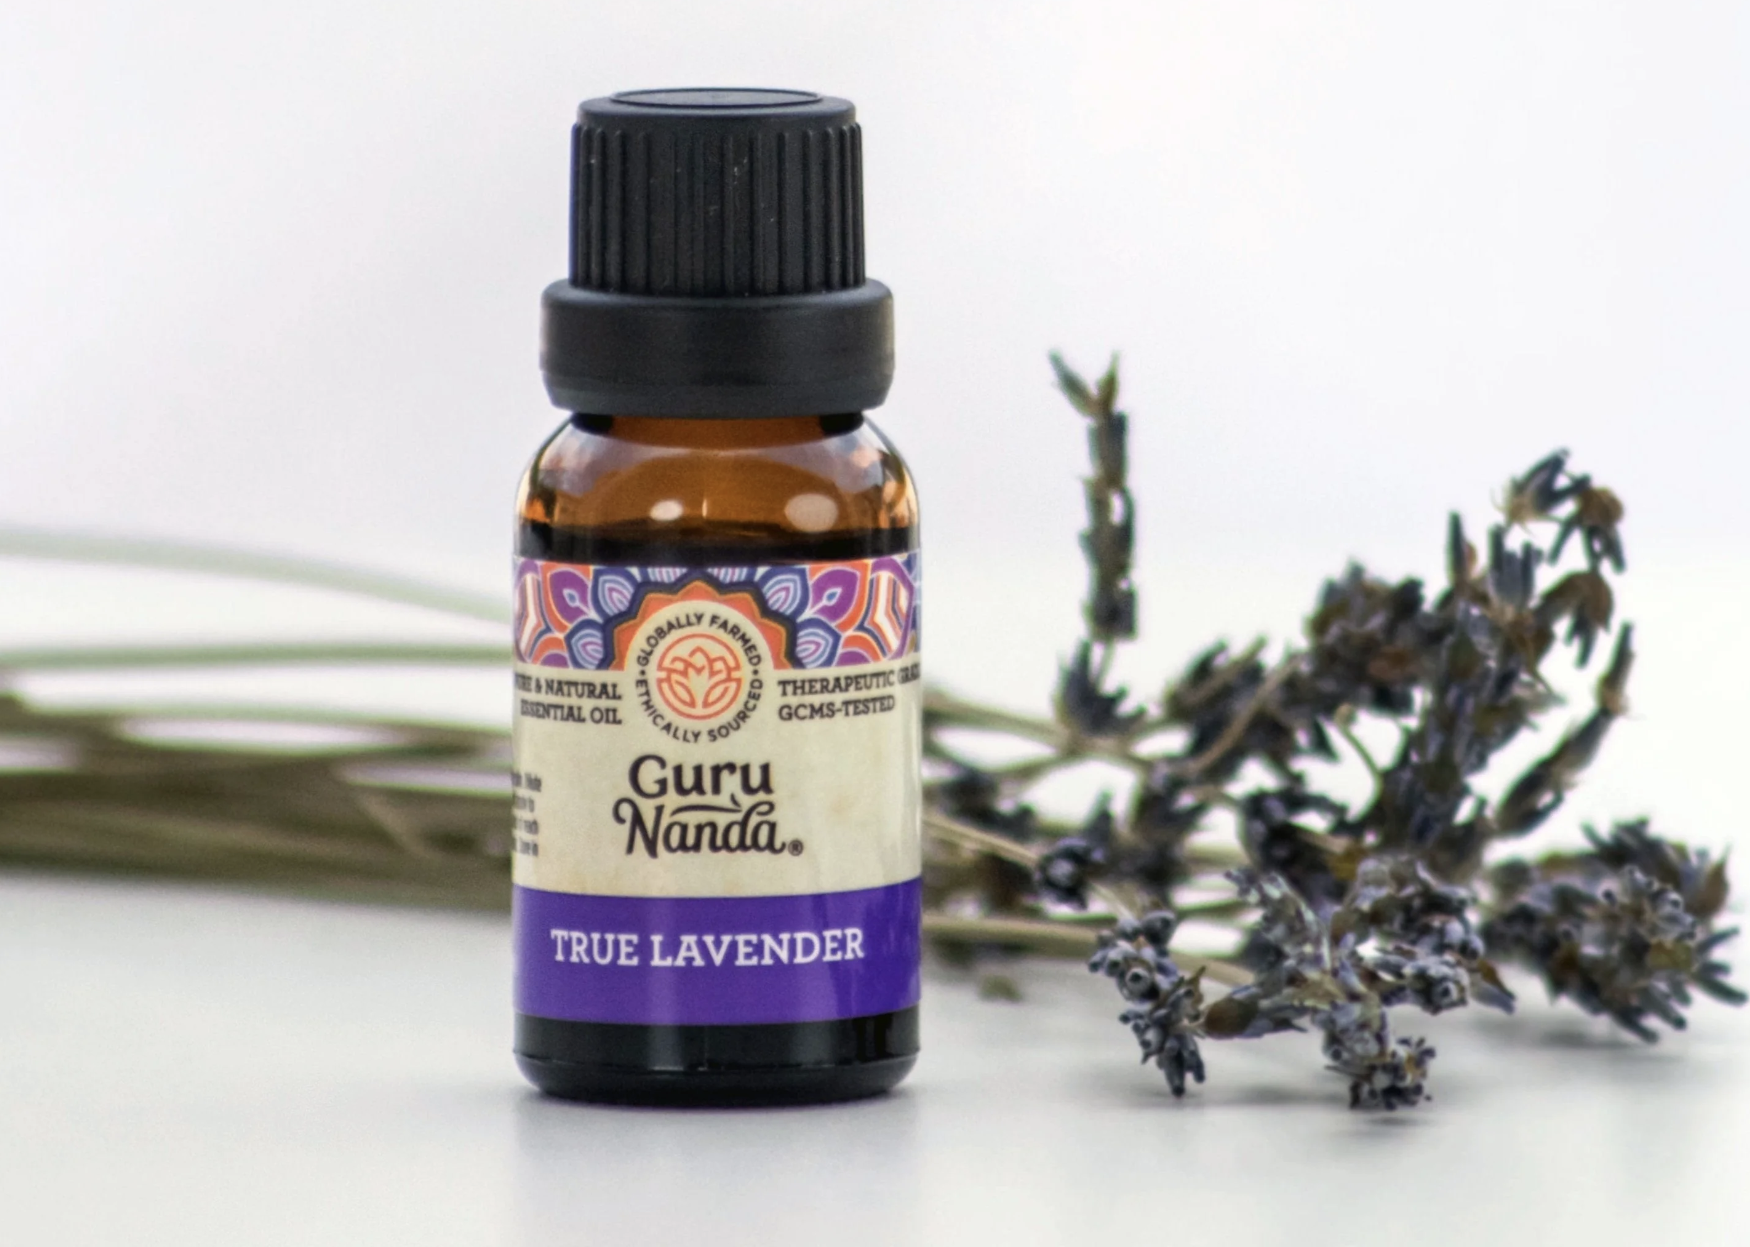 True Lavender from Guru Nanda, essential oils, diffuser